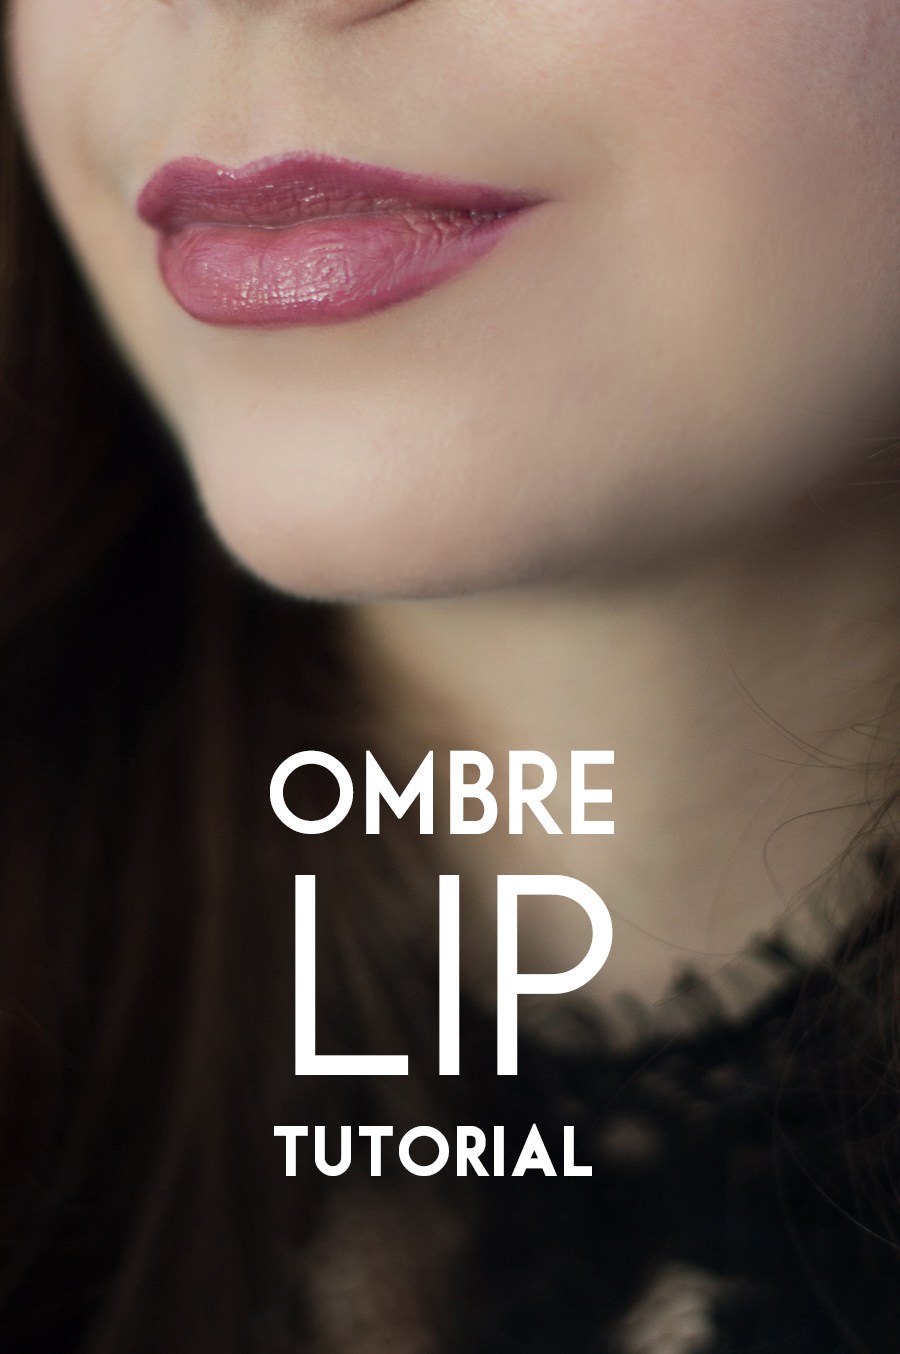 Ombre lipstick tutorial